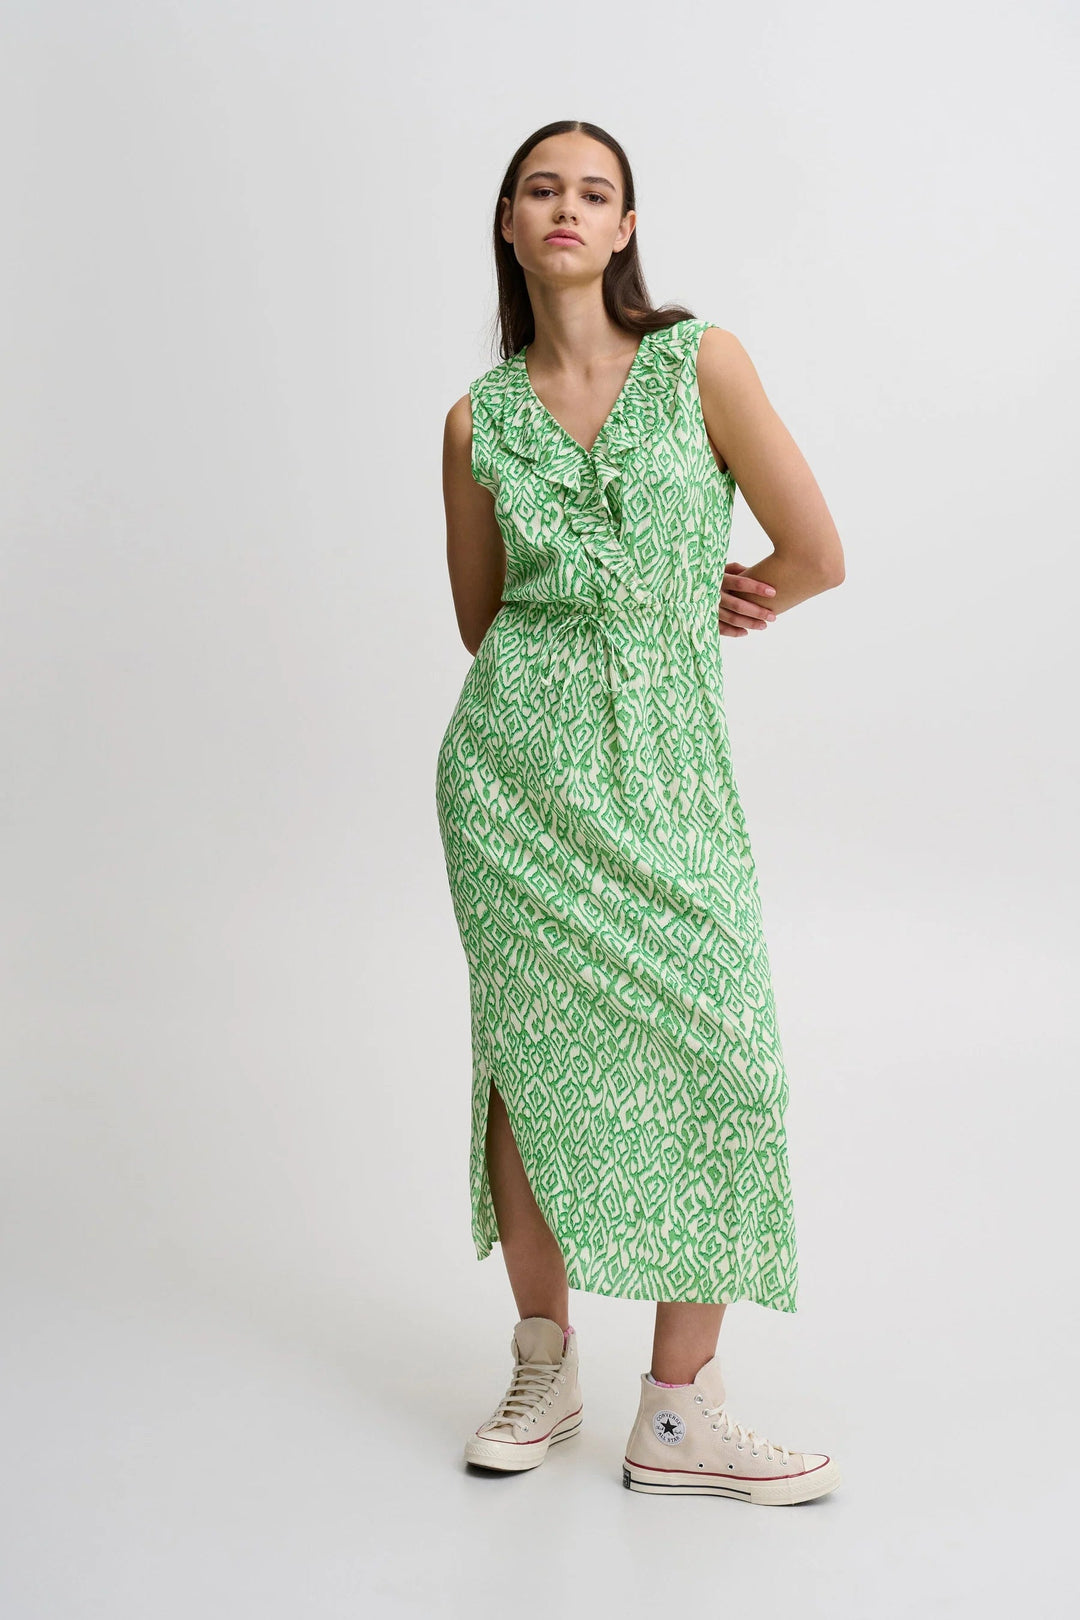 Grøn kjole